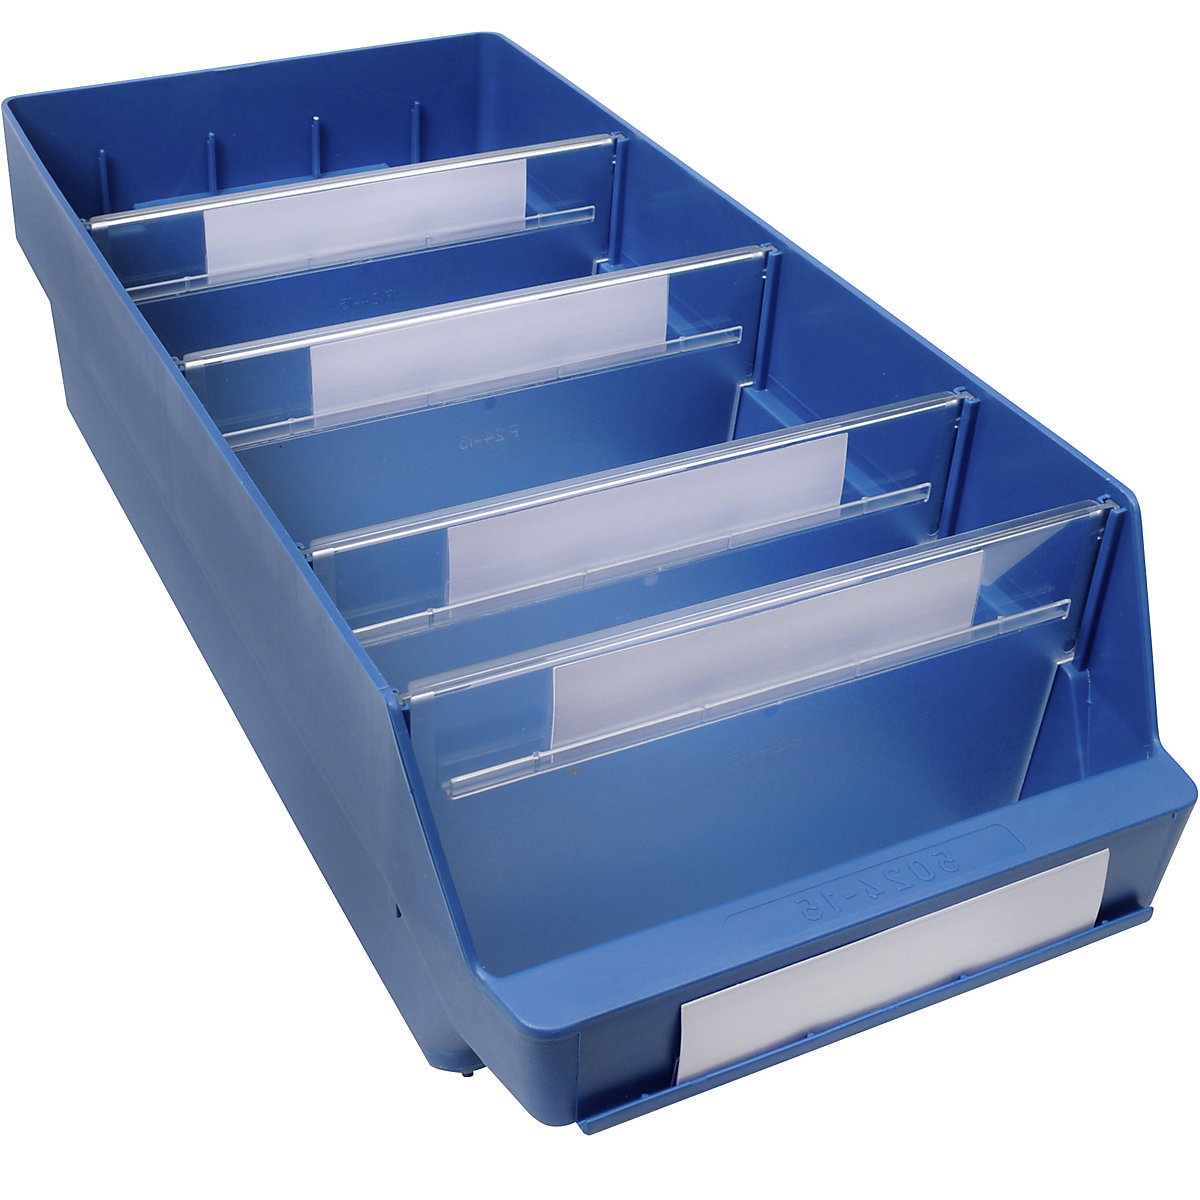 Regalkasten aus hochschlagfestem Polypropylen STEMO, blau, LxBxH 500 x 240 x 150 mm, VE 10 Stk-18